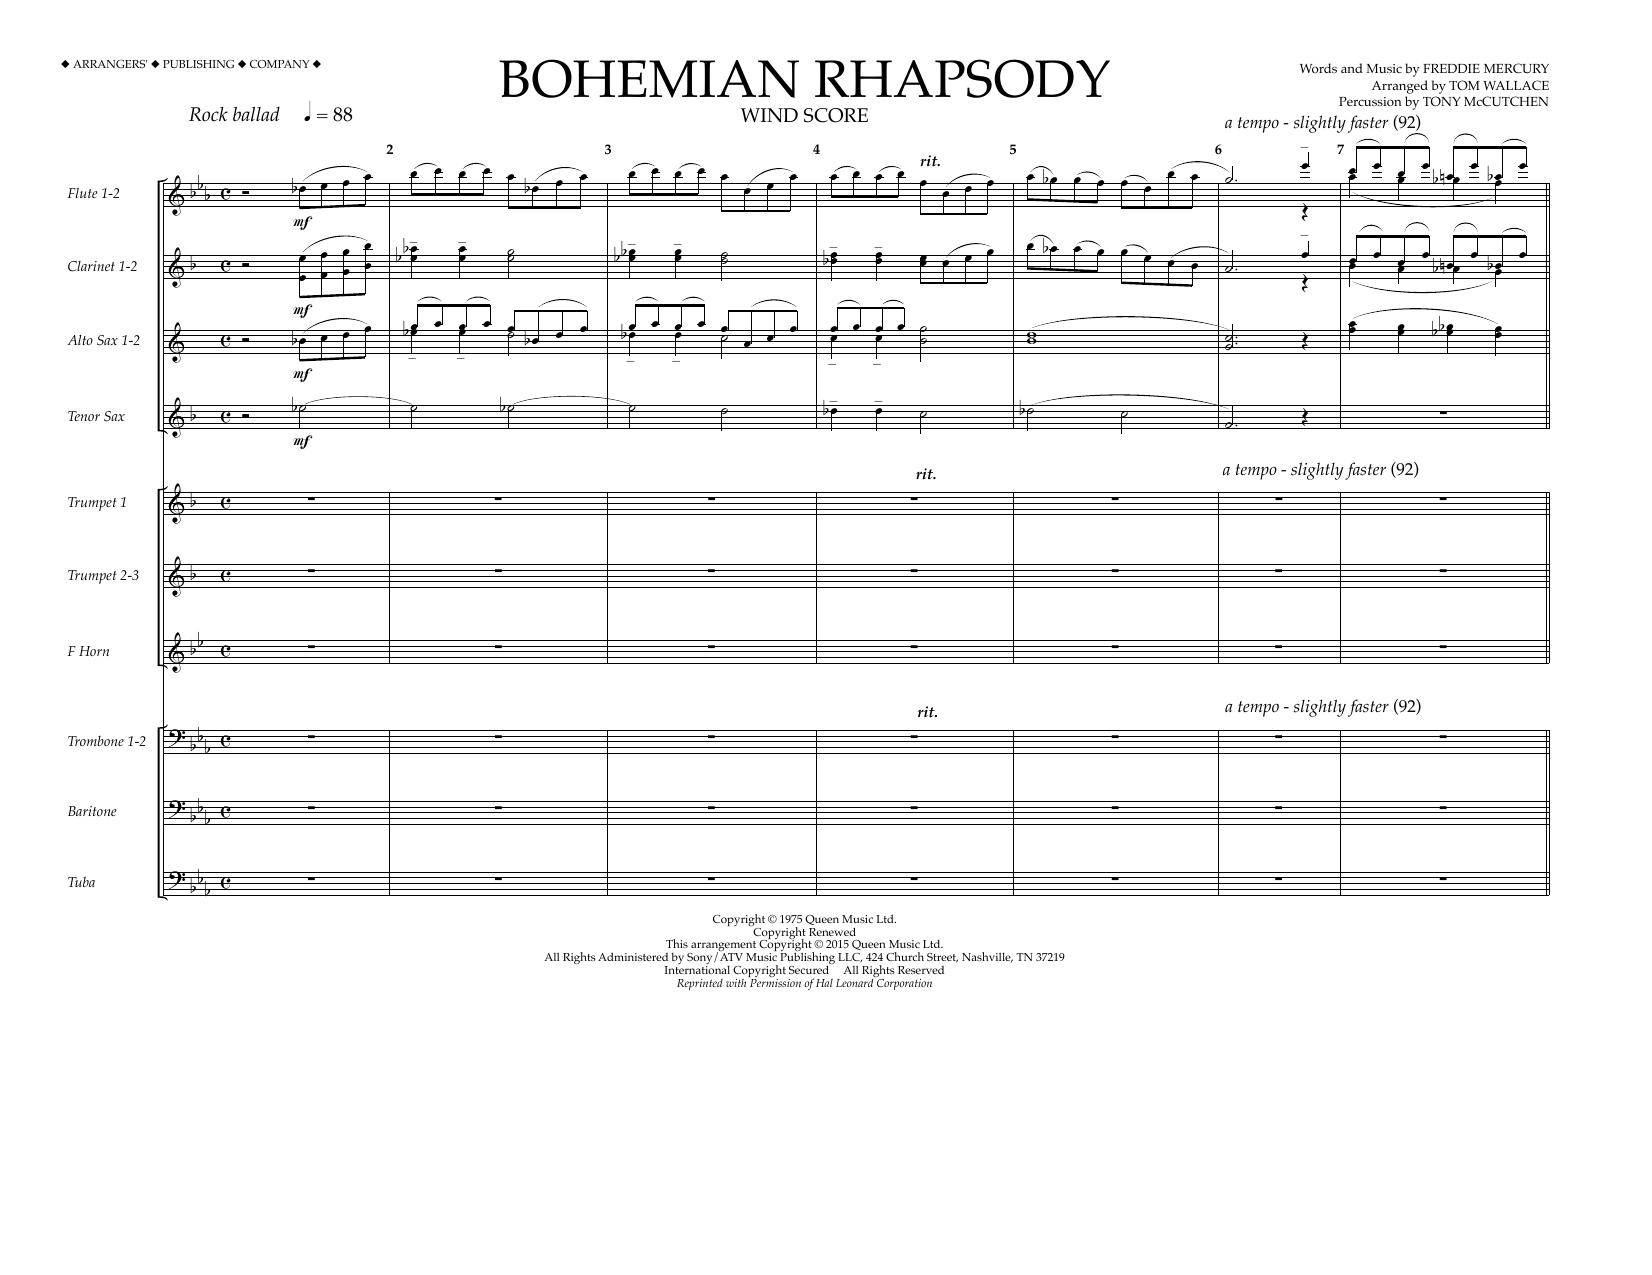 Download Tom Wallace Bohemian Rhapsody - Wind Score Sheet Music